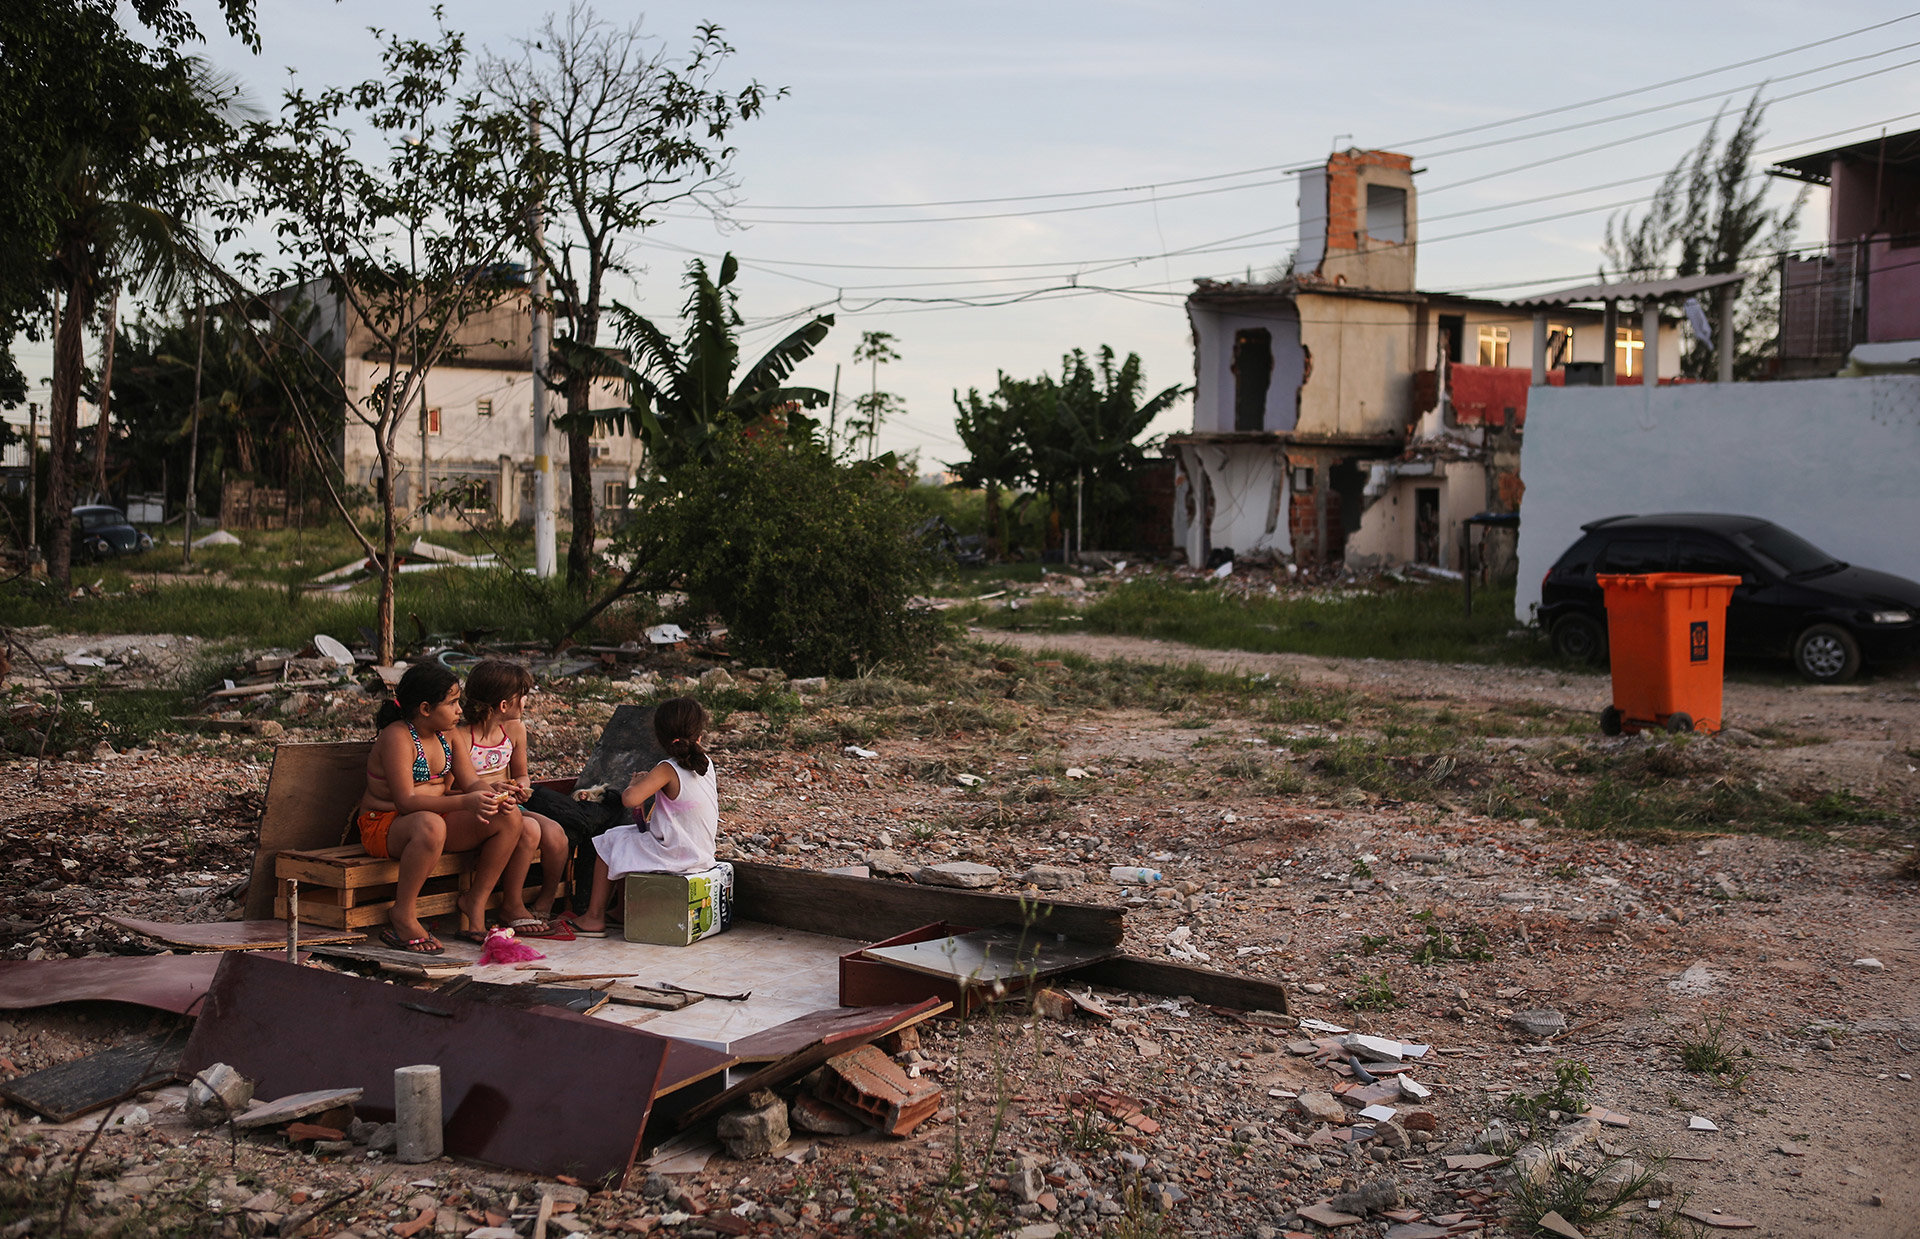 Kinder spielen in einer Favela in Rio de Janeiro zwischen abgerissenen Häusern – die Favela muss für die Olympischen Spiele weichen  (Foto: Mario Tama/ getty)